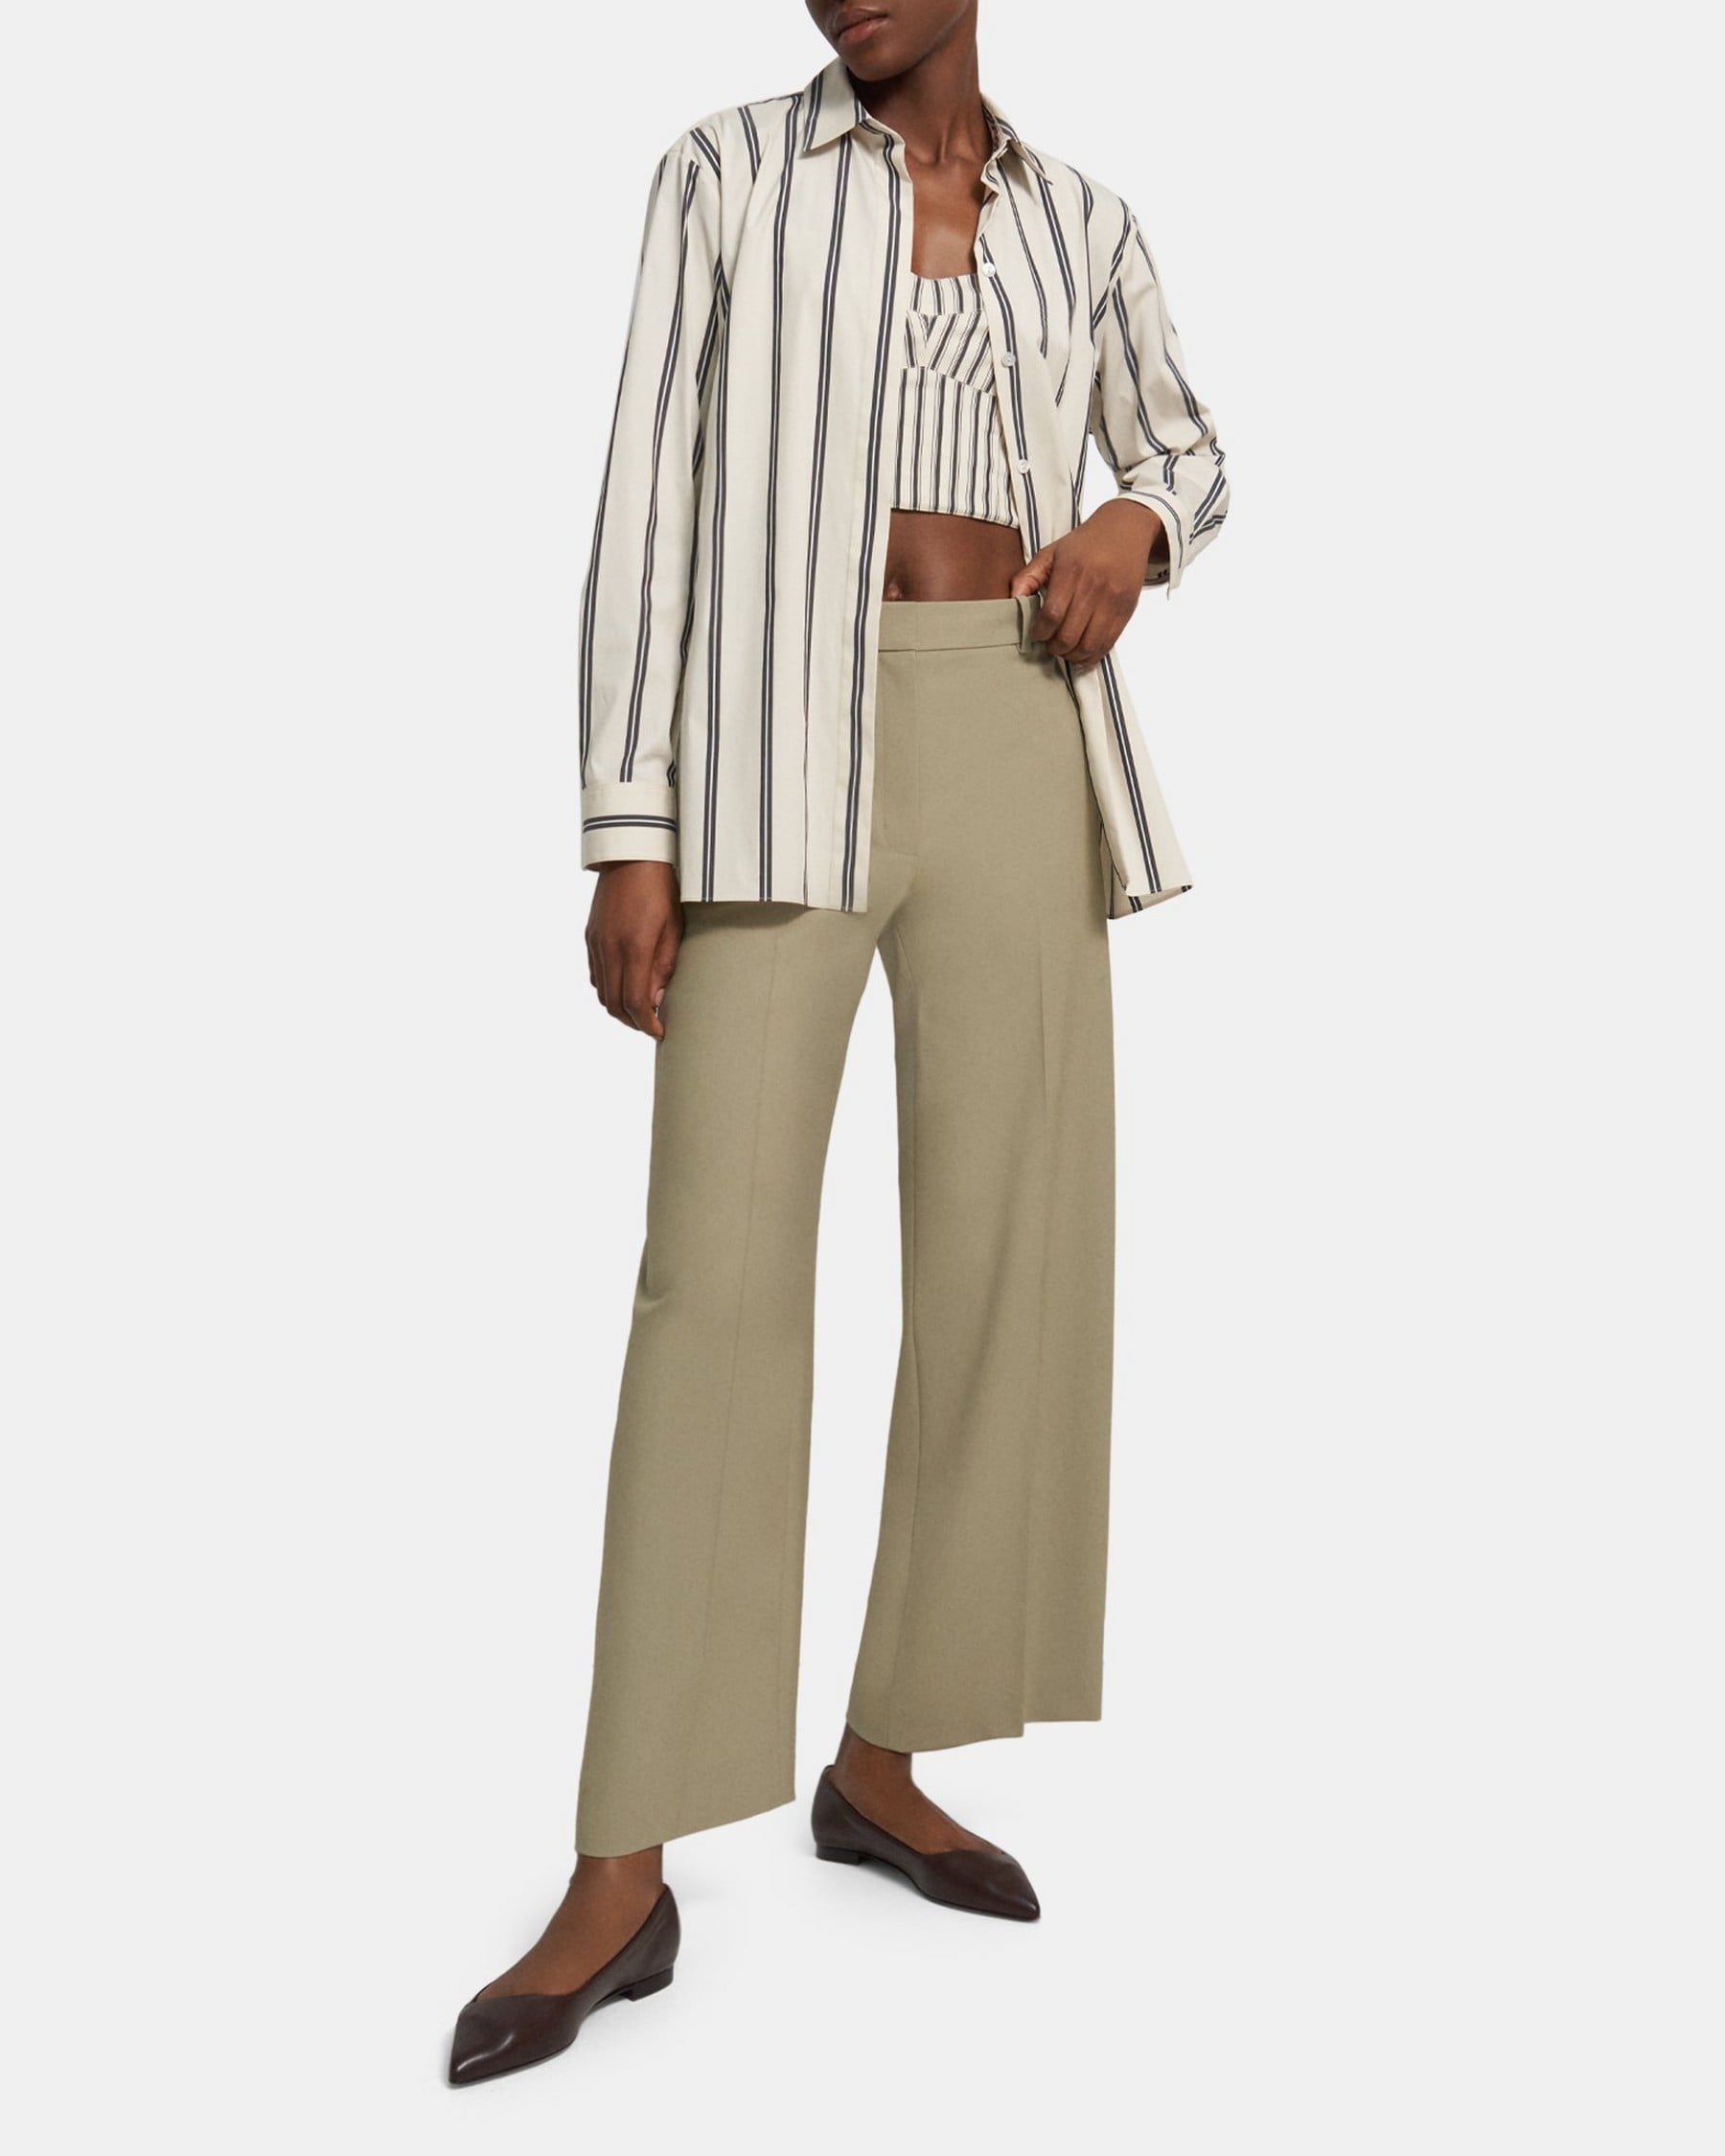 띠어리 Theory Bustier-Shirt Set in Striped Cotton Poplin,MULTI